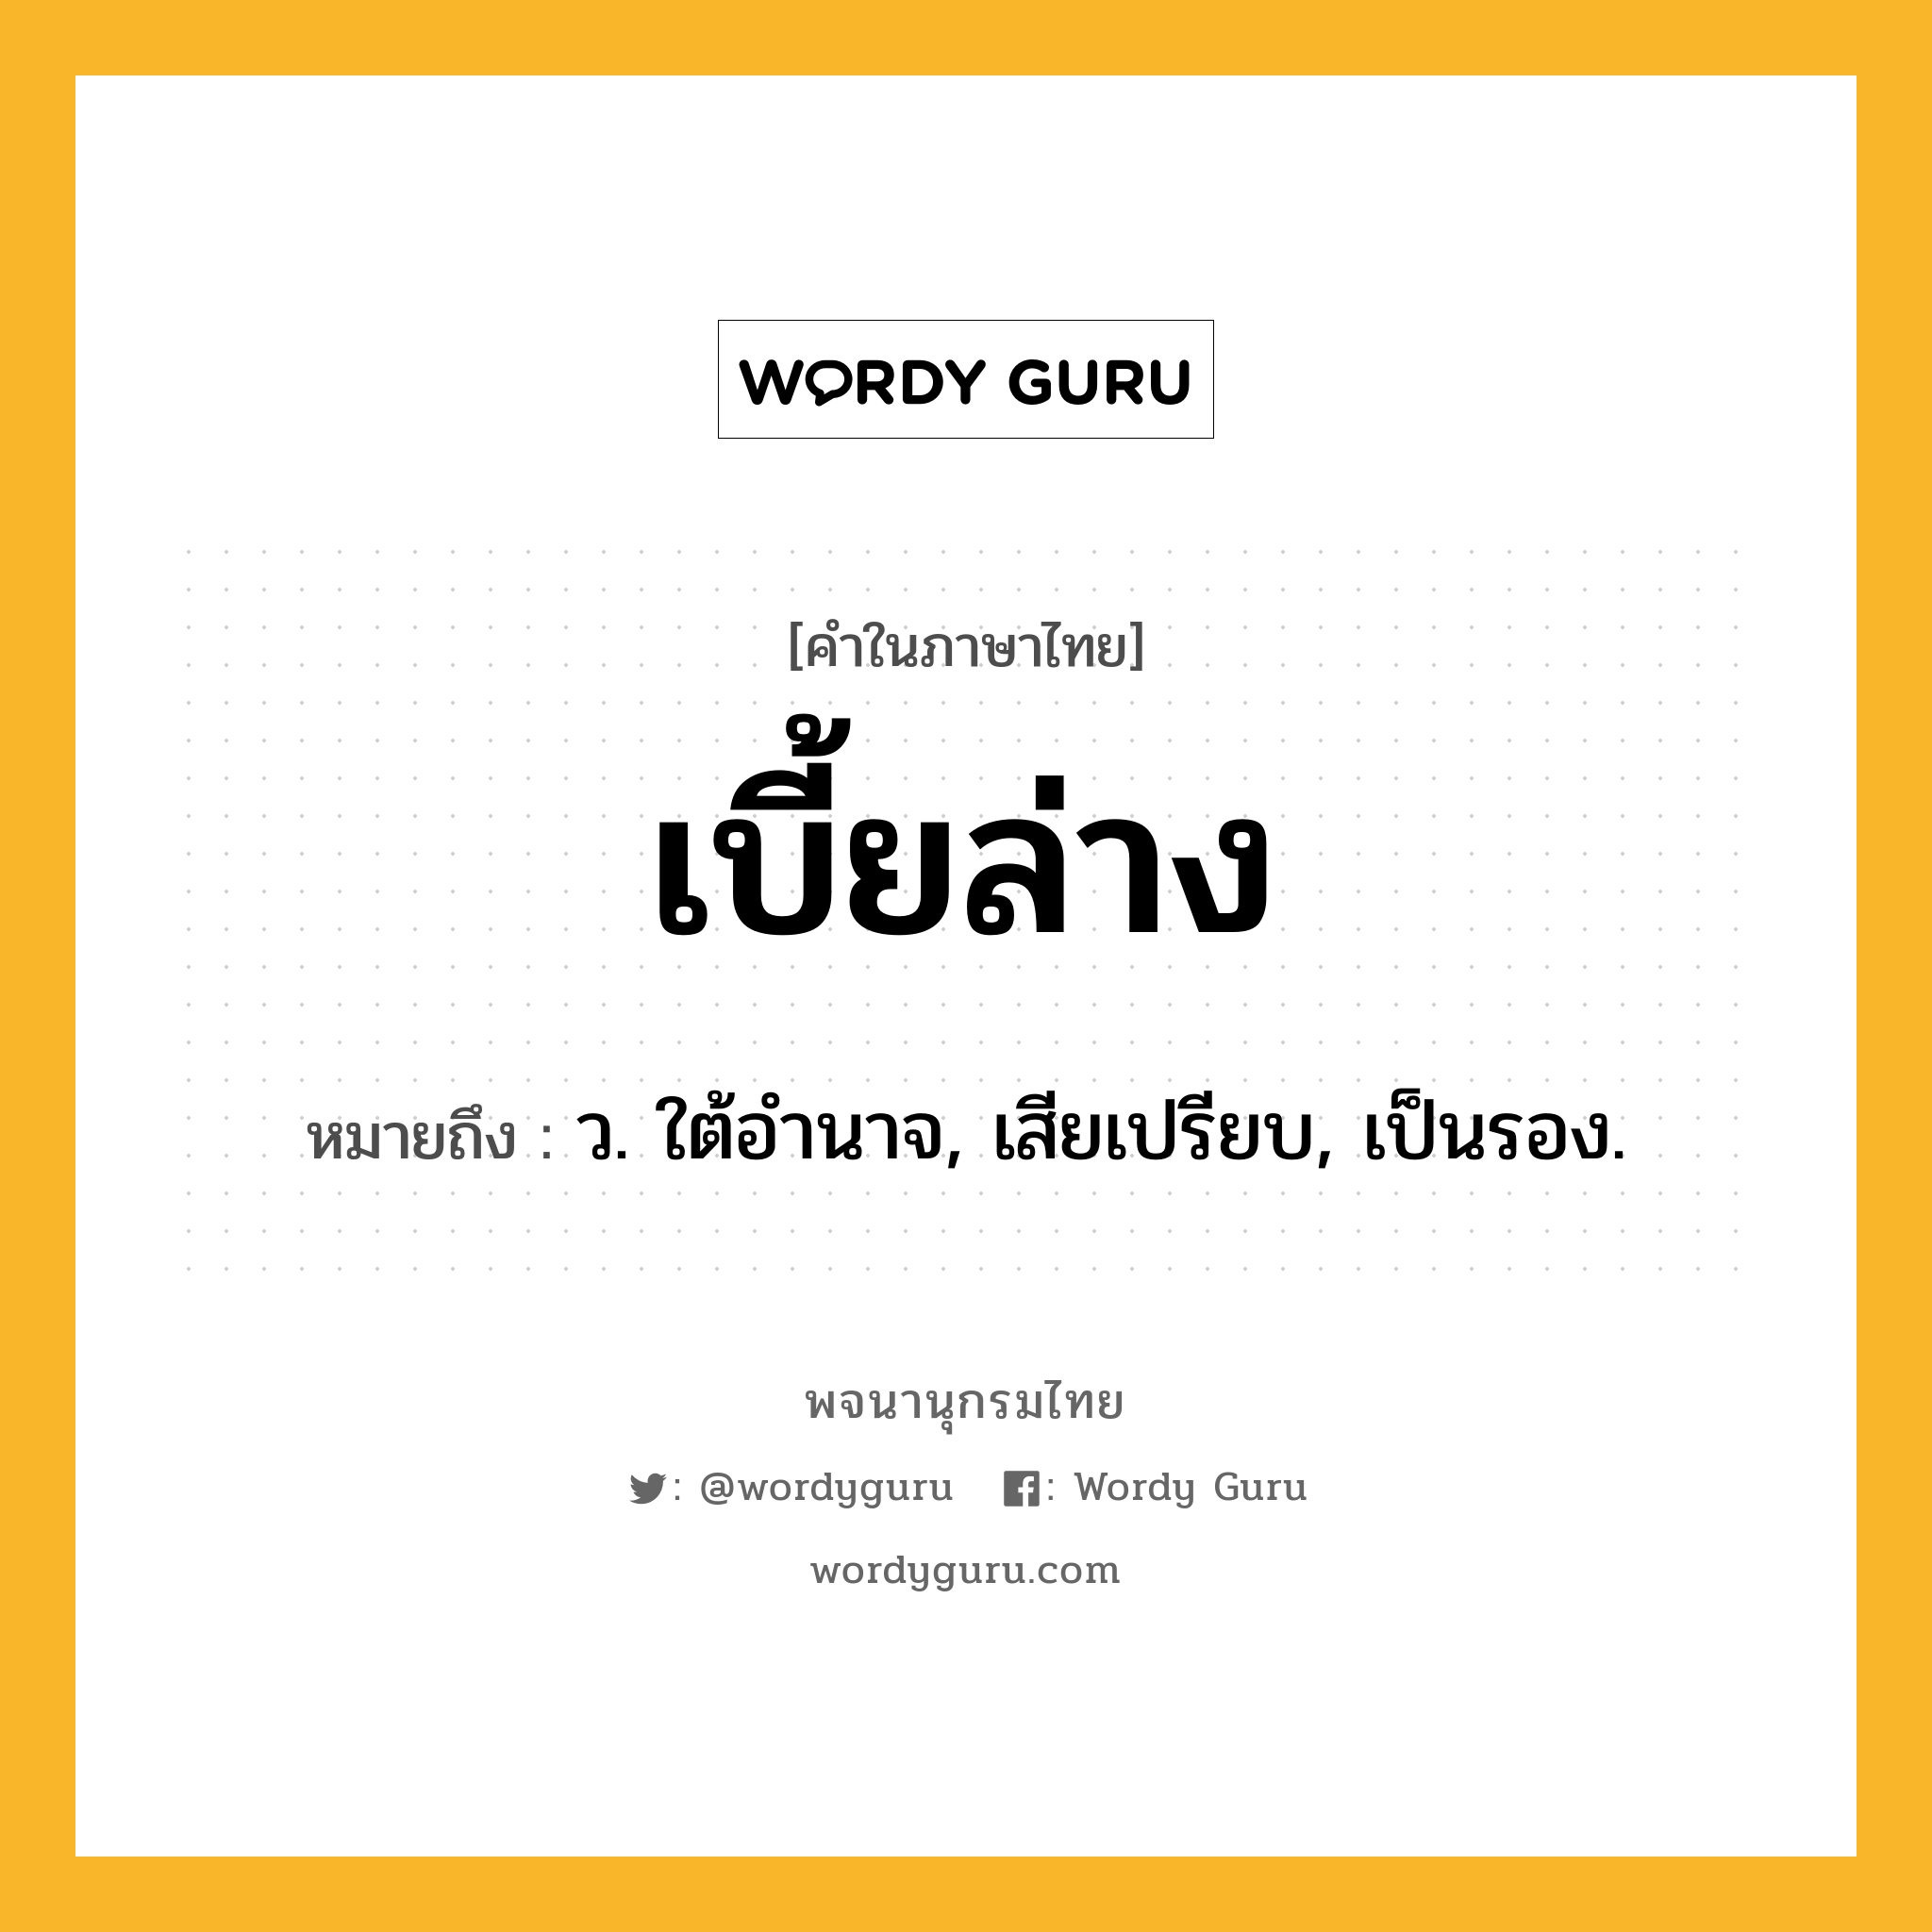 เบี้ยล่าง ความหมาย หมายถึงอะไร?, คำในภาษาไทย เบี้ยล่าง หมายถึง ว. ใต้อํานาจ, เสียเปรียบ, เป็นรอง.